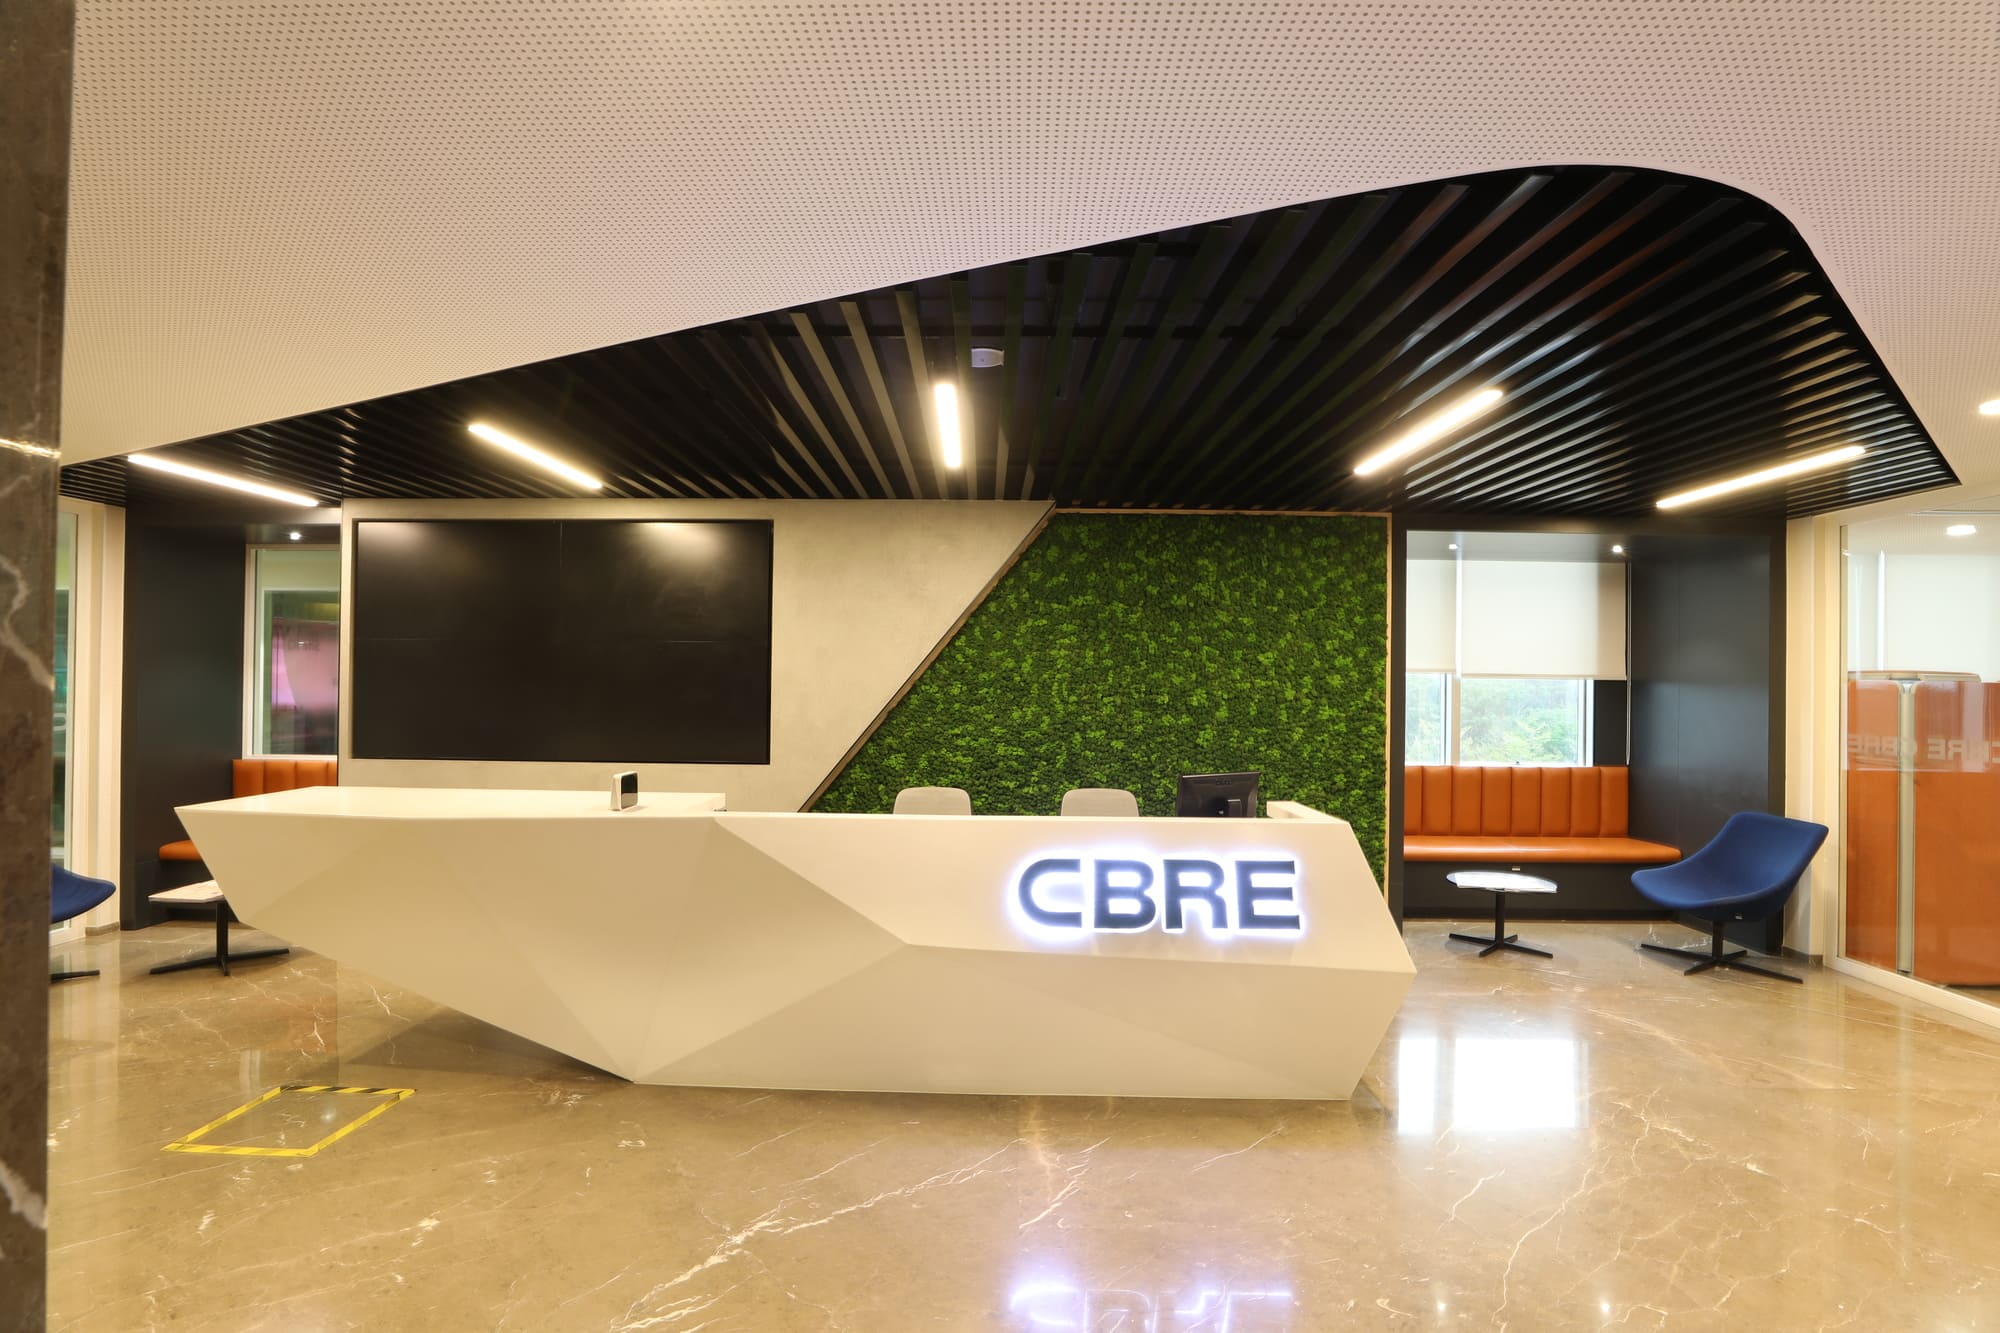 CBRE Corporate Office